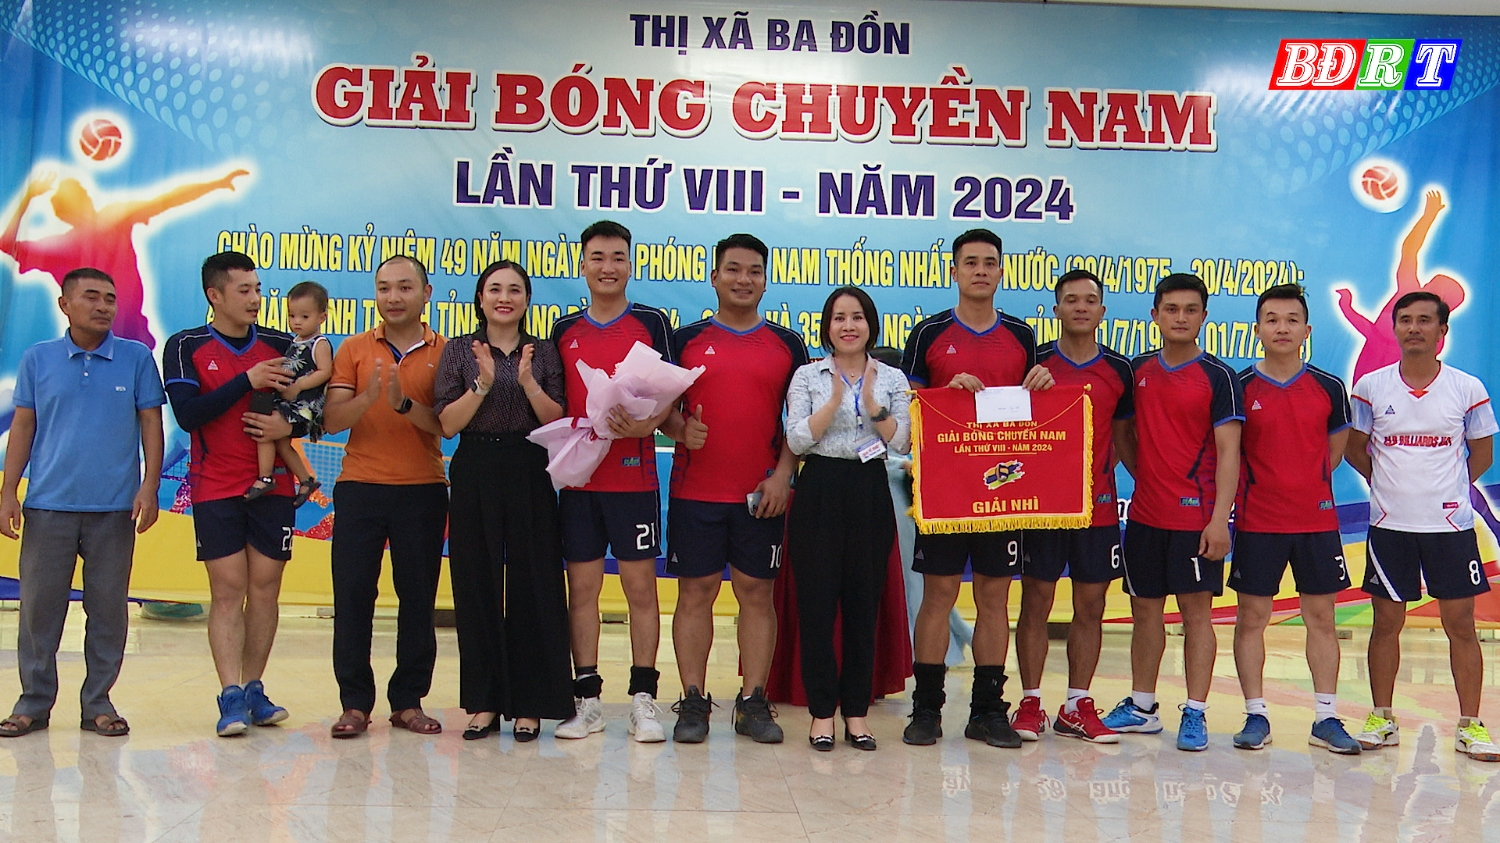 BTC trao giải nhì cho đội bóng phường Ba Đồn